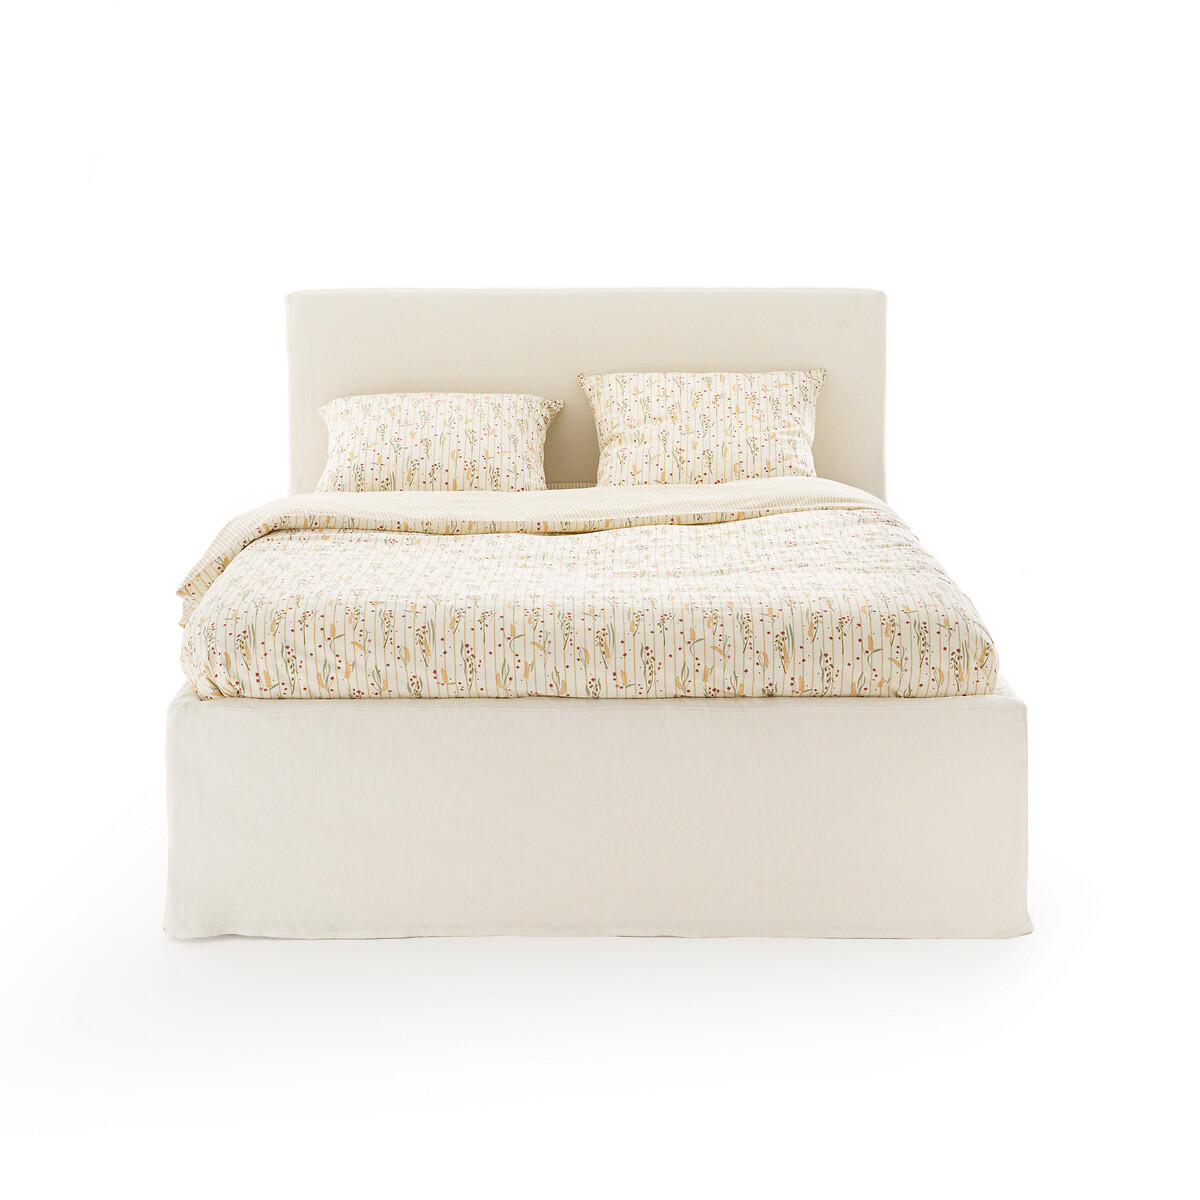 Кровать LaRedoute Со съемным чехлом Kendari 160 x 200 см белый, размер 160 x 200 см - фото 2